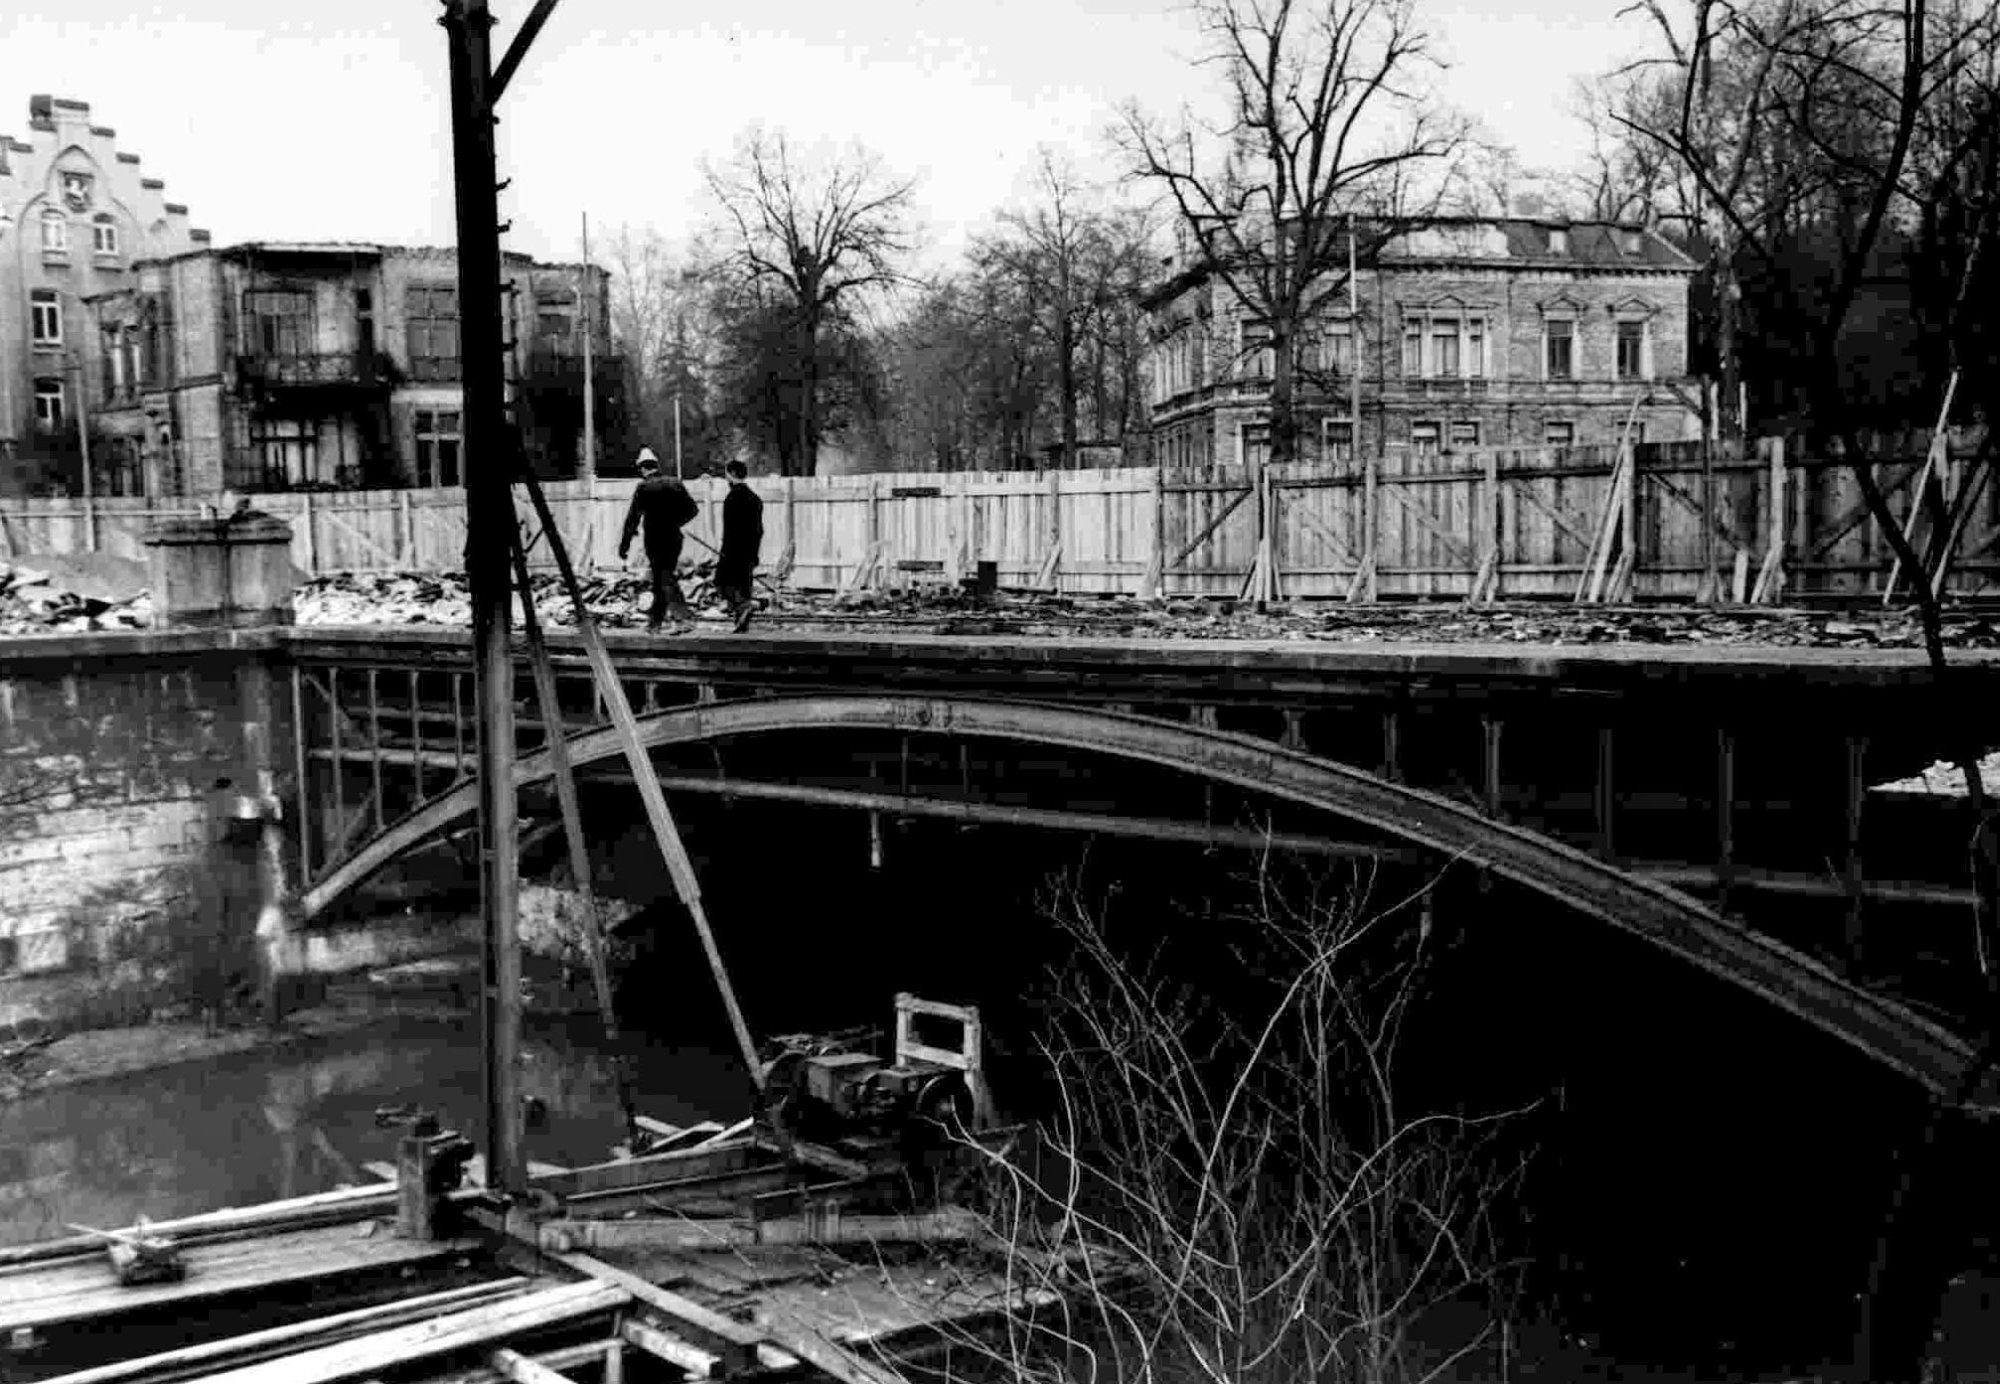 Augusttorbrücke, Westansicht der alten Brücke vor dem Abbruch, um 1958